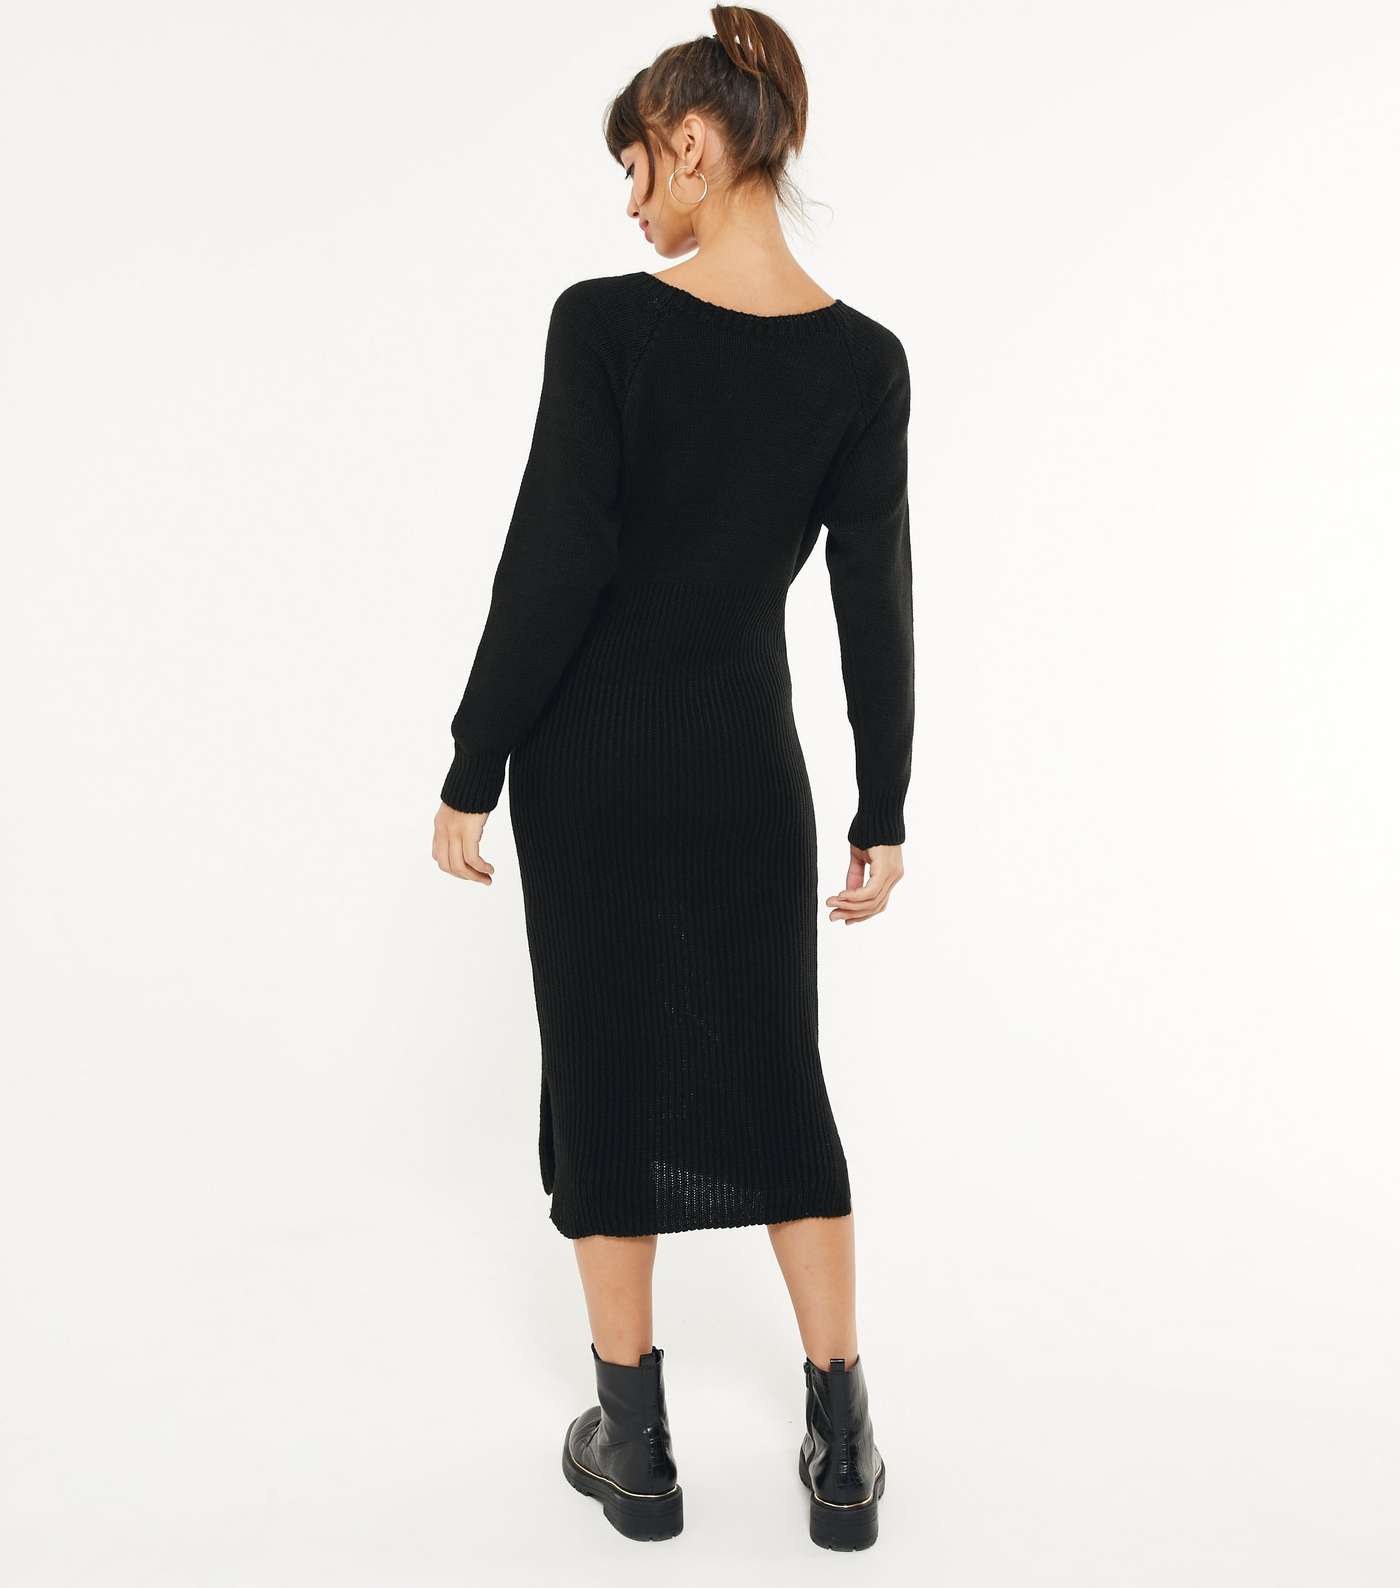 Mela Black Knit Ribbed Midi Dress Image 3